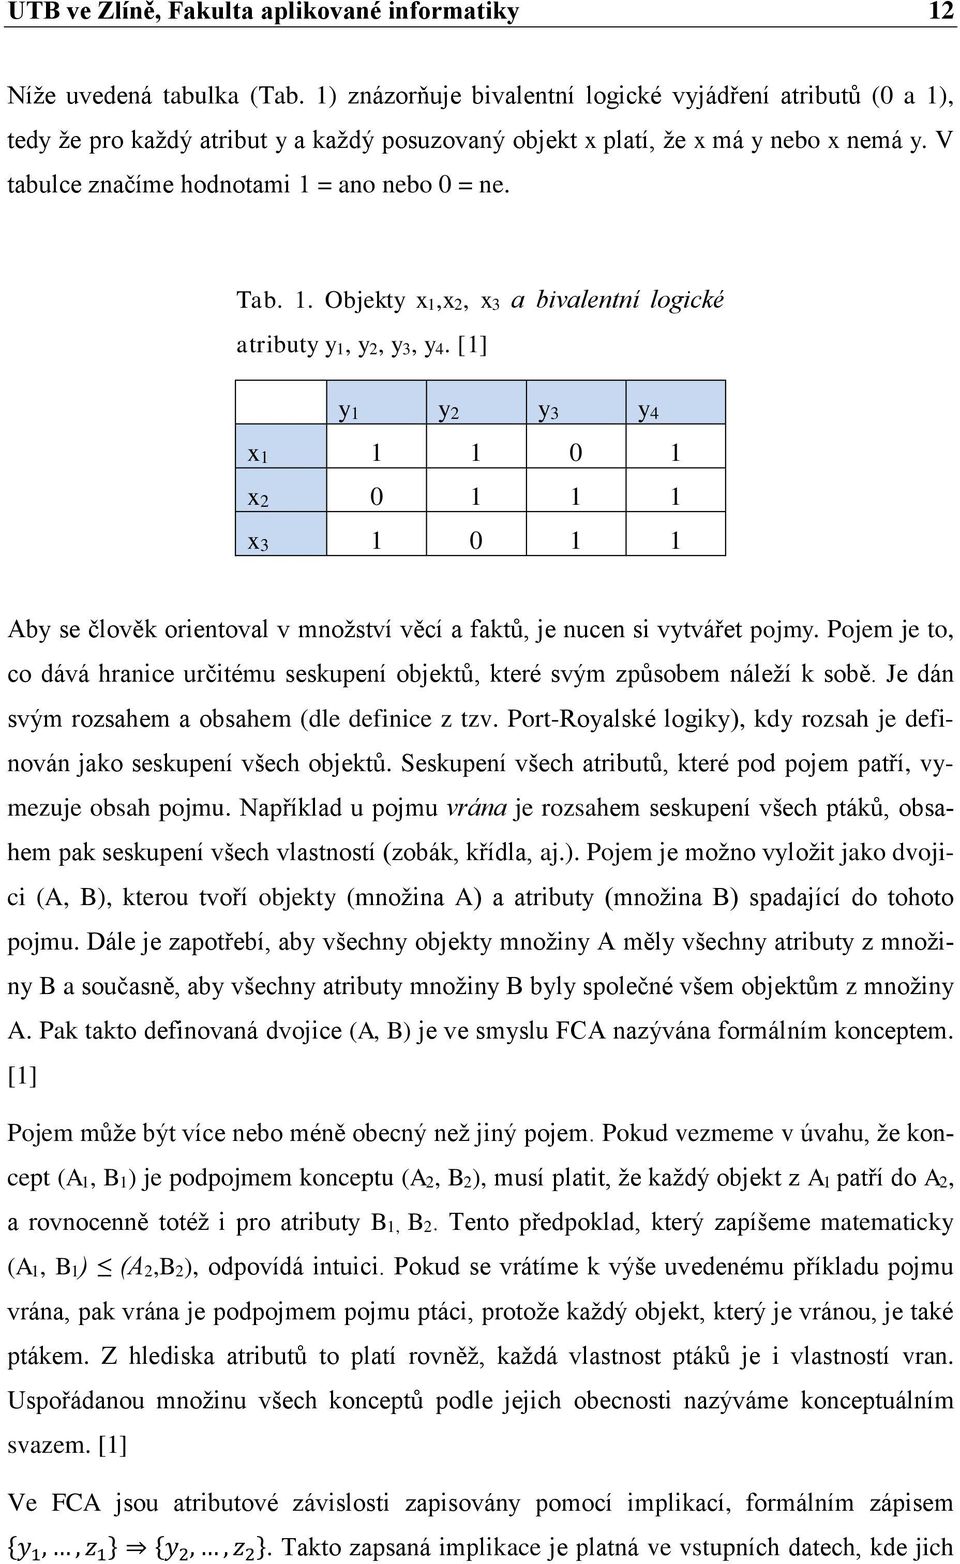 Tab. 1. Objekty x1,x2, x3 a bivalentní logické atributy y1, y2, y3, y4. [1] y1 y2 y3 y4 x1 1 1 0 1 x2 0 1 1 1 x3 1 0 1 1 Aby se člověk orientoval v množství věcí a faktů, je nucen si vytvářet pojmy.